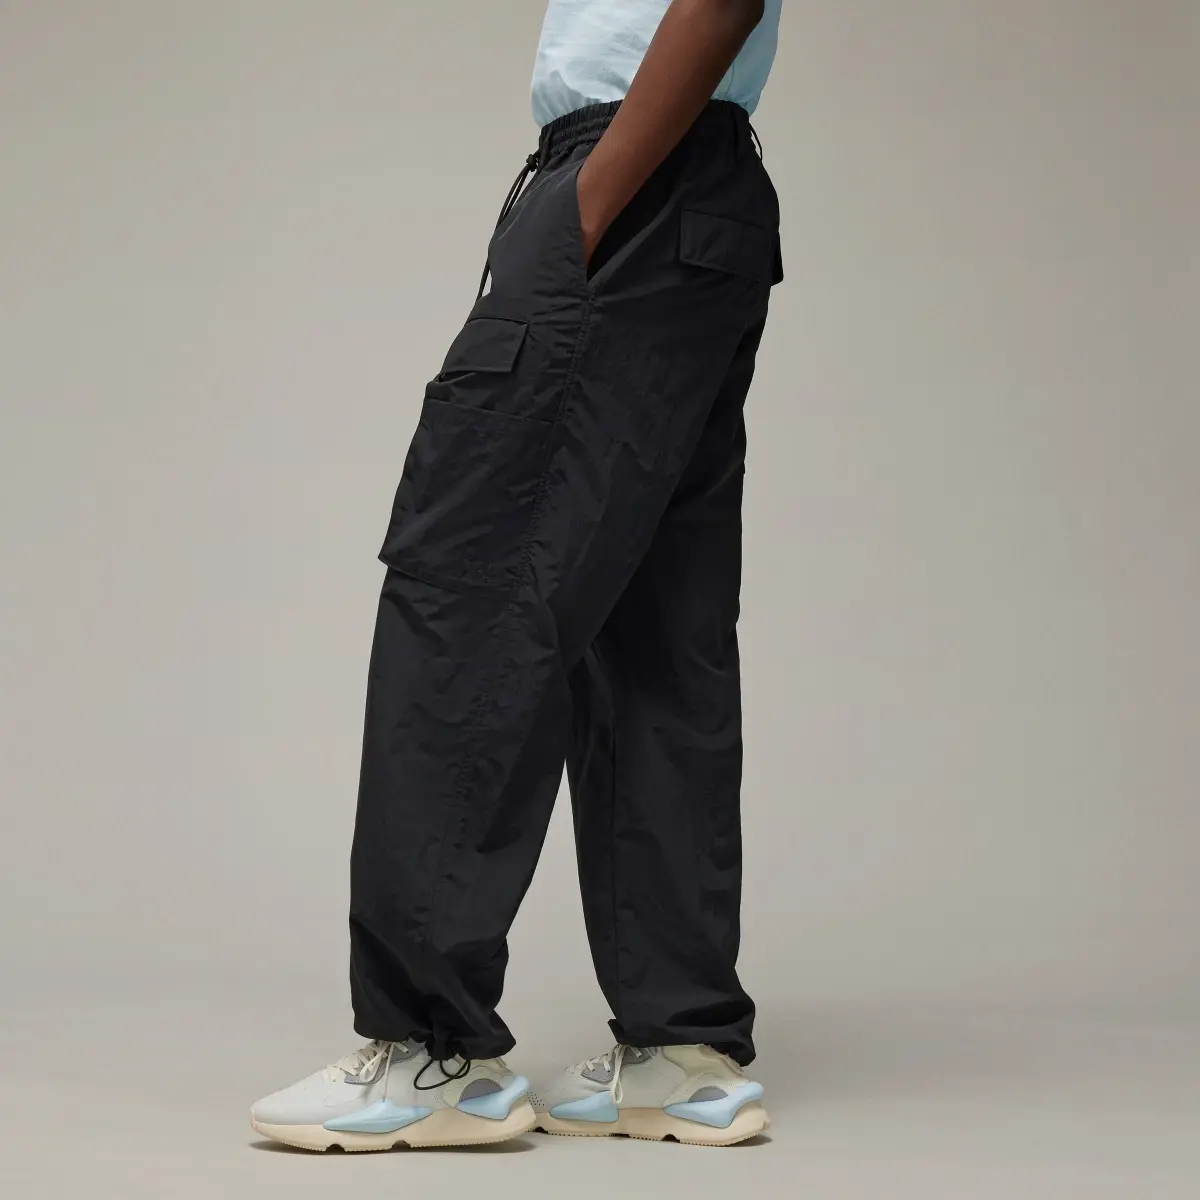 Adidas Spodnie Y-3 Crinkle Nylon. 2